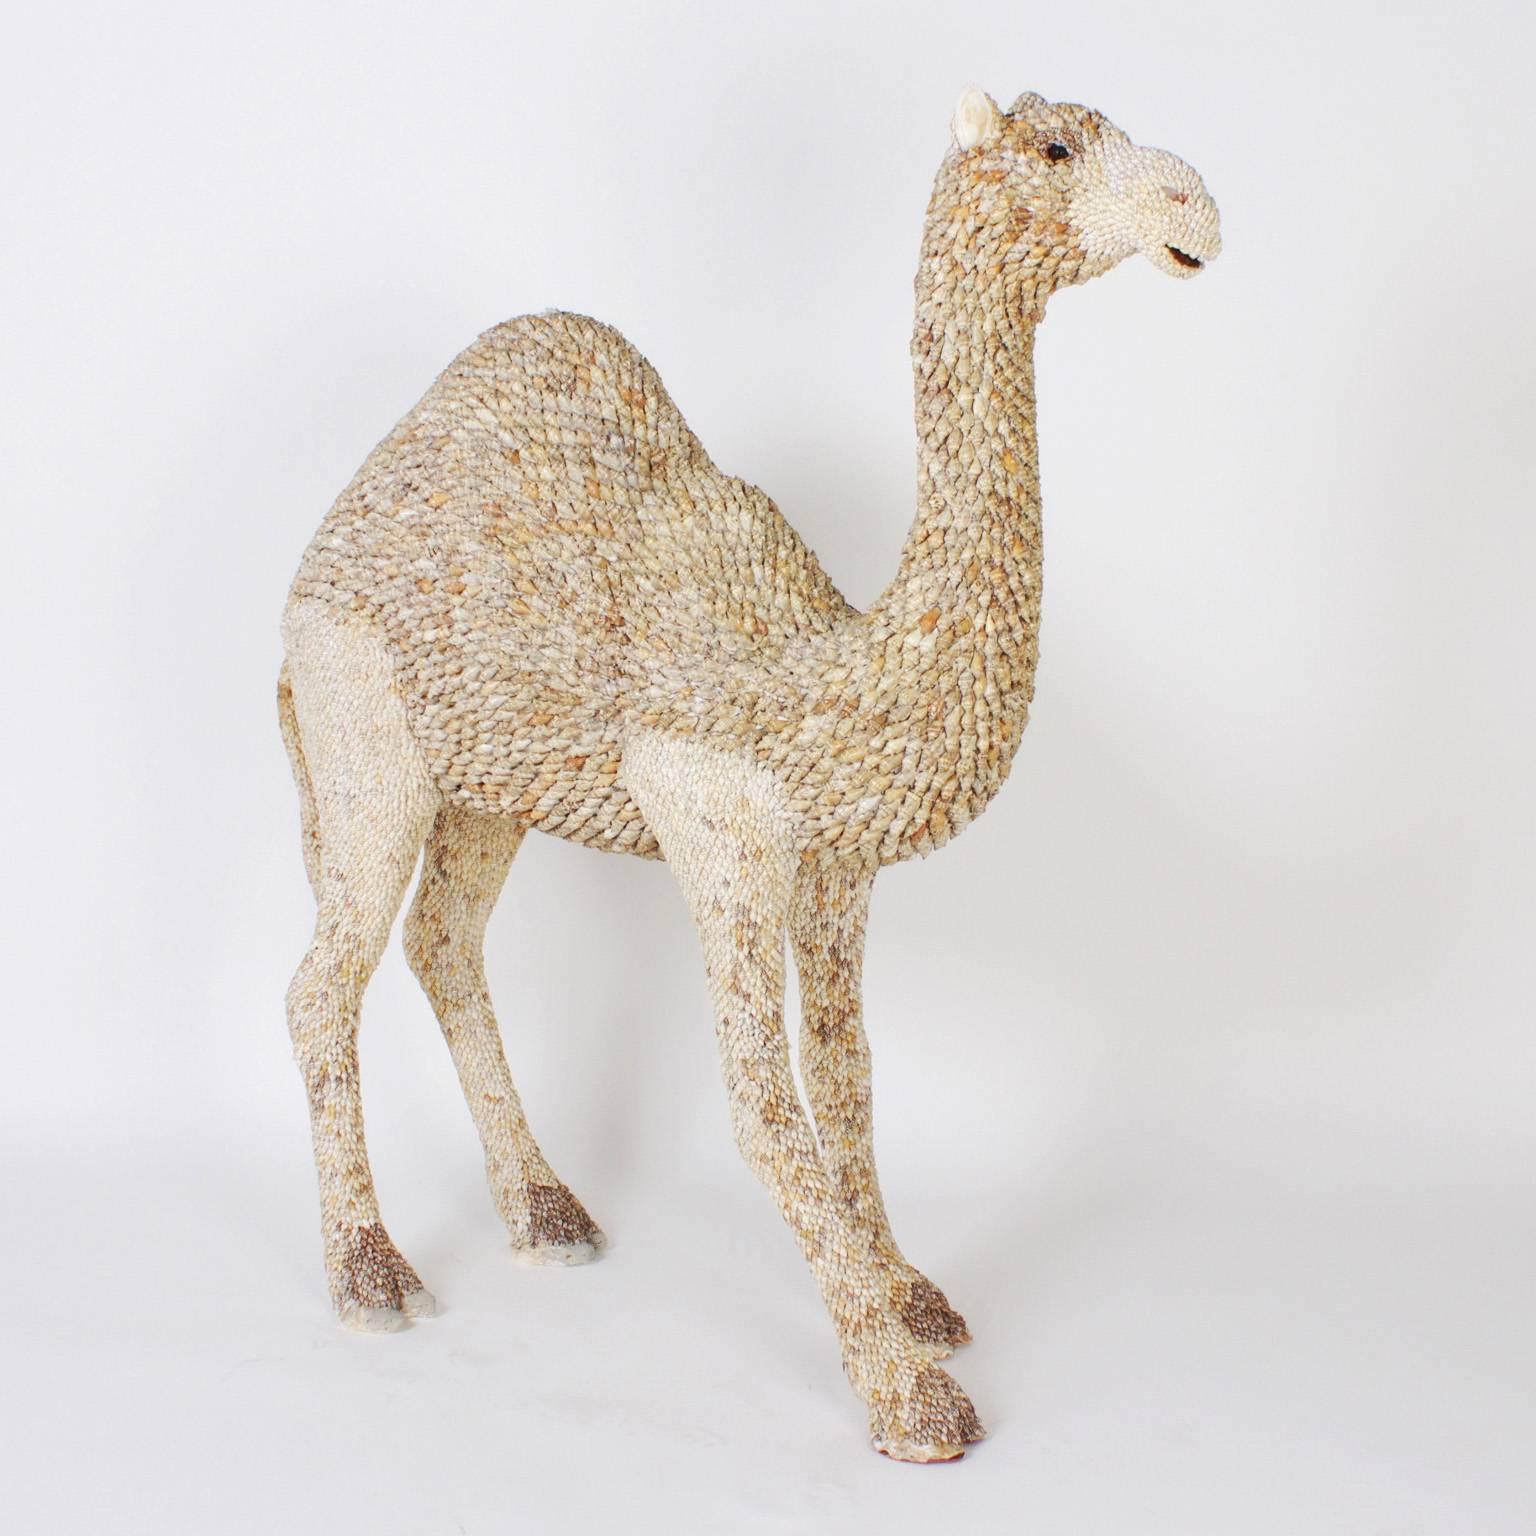 Eine Skulptur eines lebensgroßen jungen Kamels:: das von einer phantasievollen und ehrgeizigen Hand vollständig mit Muscheln verziert wurde. Vom gefühlvollen Ausdruck bis zur stolzen Haltung ist dies eine perfekte Kombination aus Handwerk:: Vision